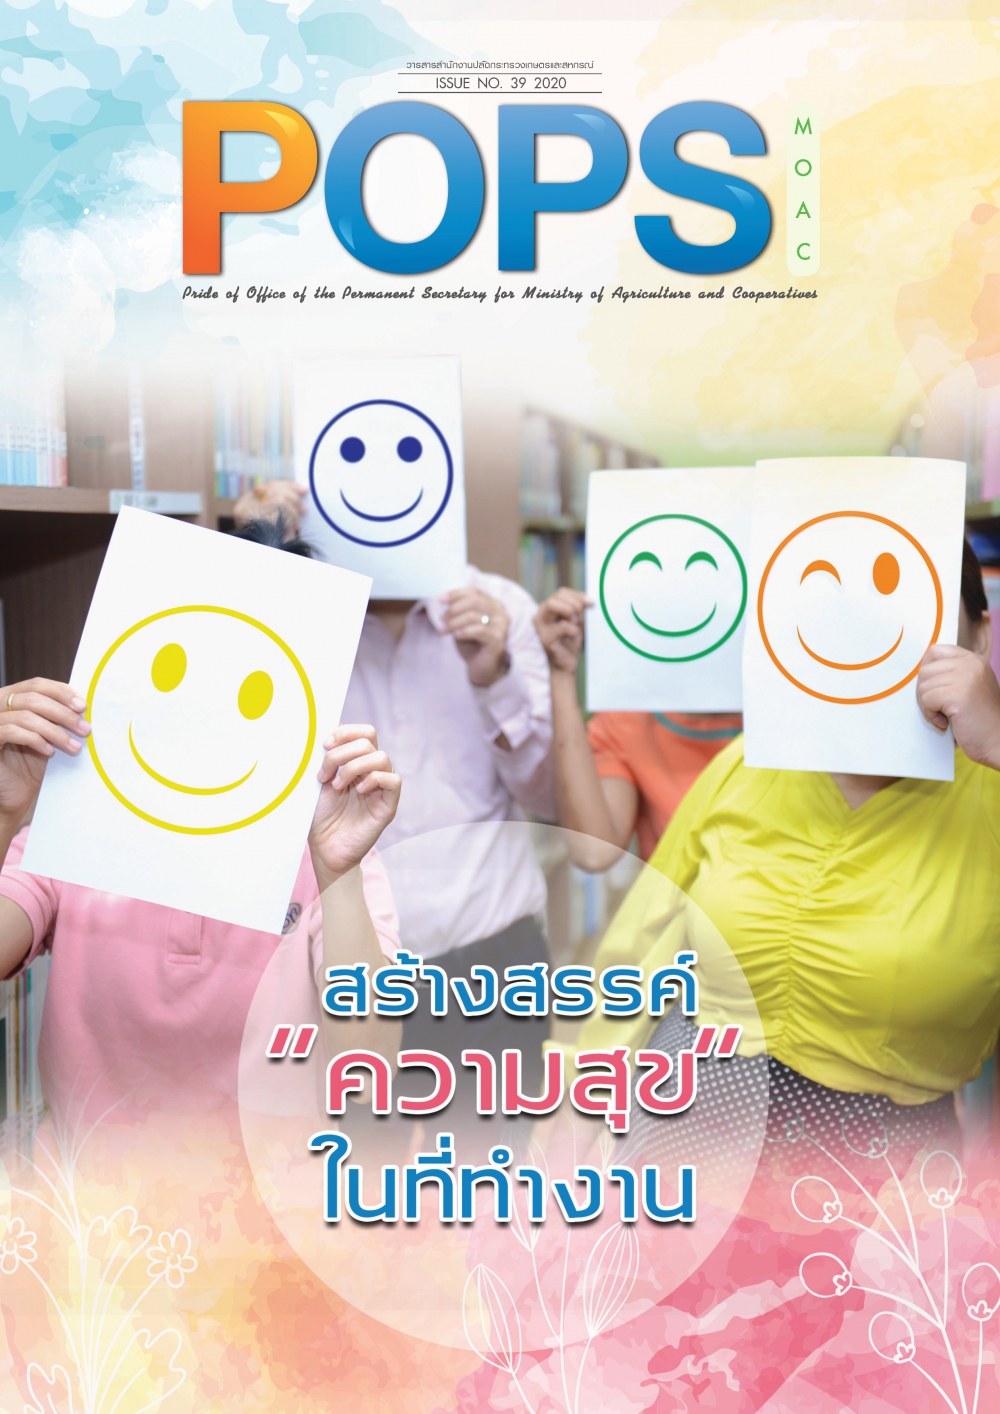 POPS จดหมายข่าว สป.กษ. ISSUE NO.39-2020-สร้างสรรค์ความสุขในที่ทำงาน